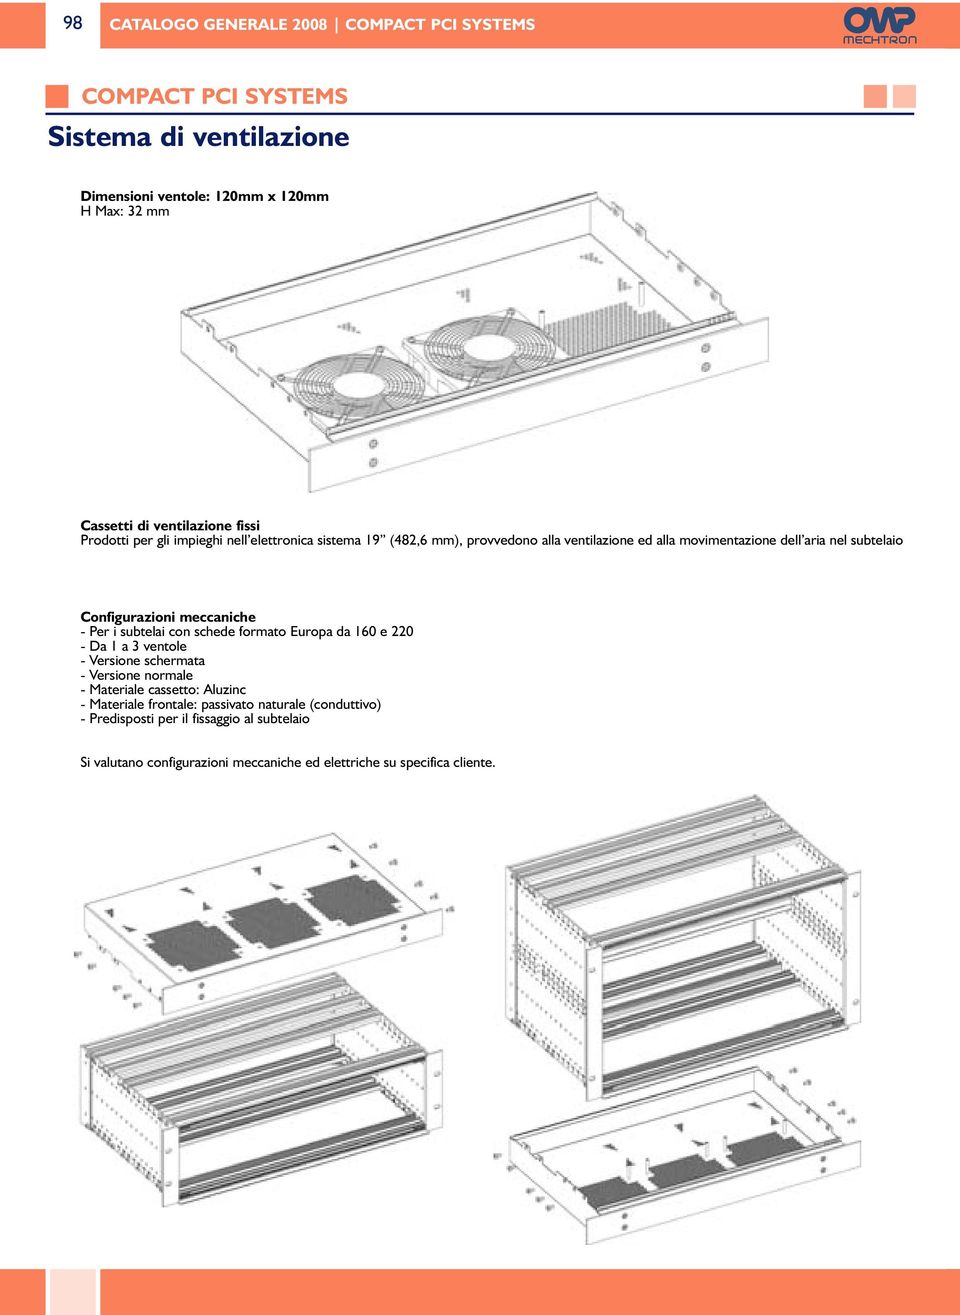 Per i subtelai con schede formato Europa da 160 e 220 - Da 1 a 3 ventole - Versione schermata - Versione normale - Materiale cassetto: Aluzinc -